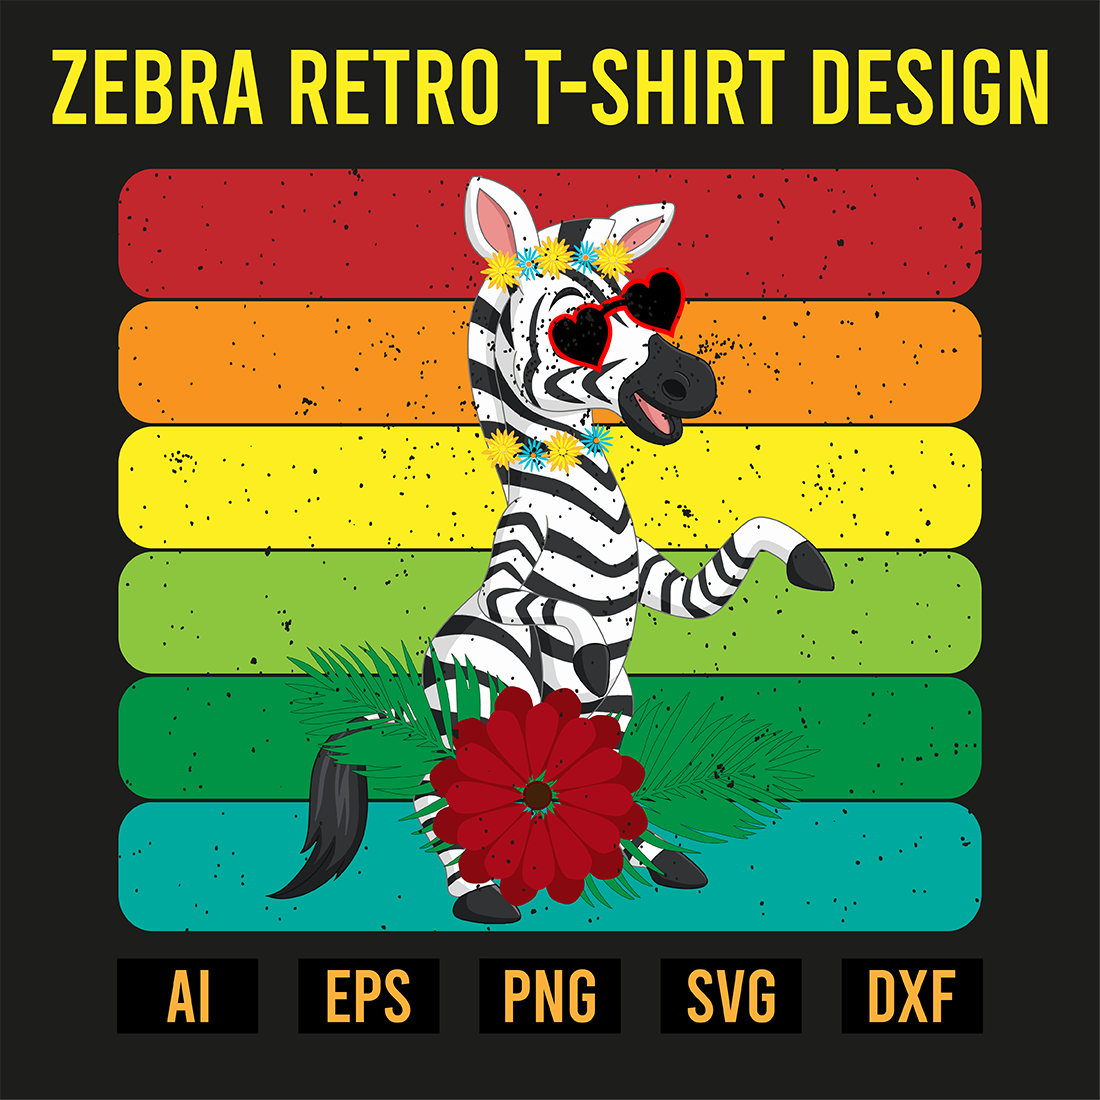 Zebra Retro T-Shirt Design preview image.